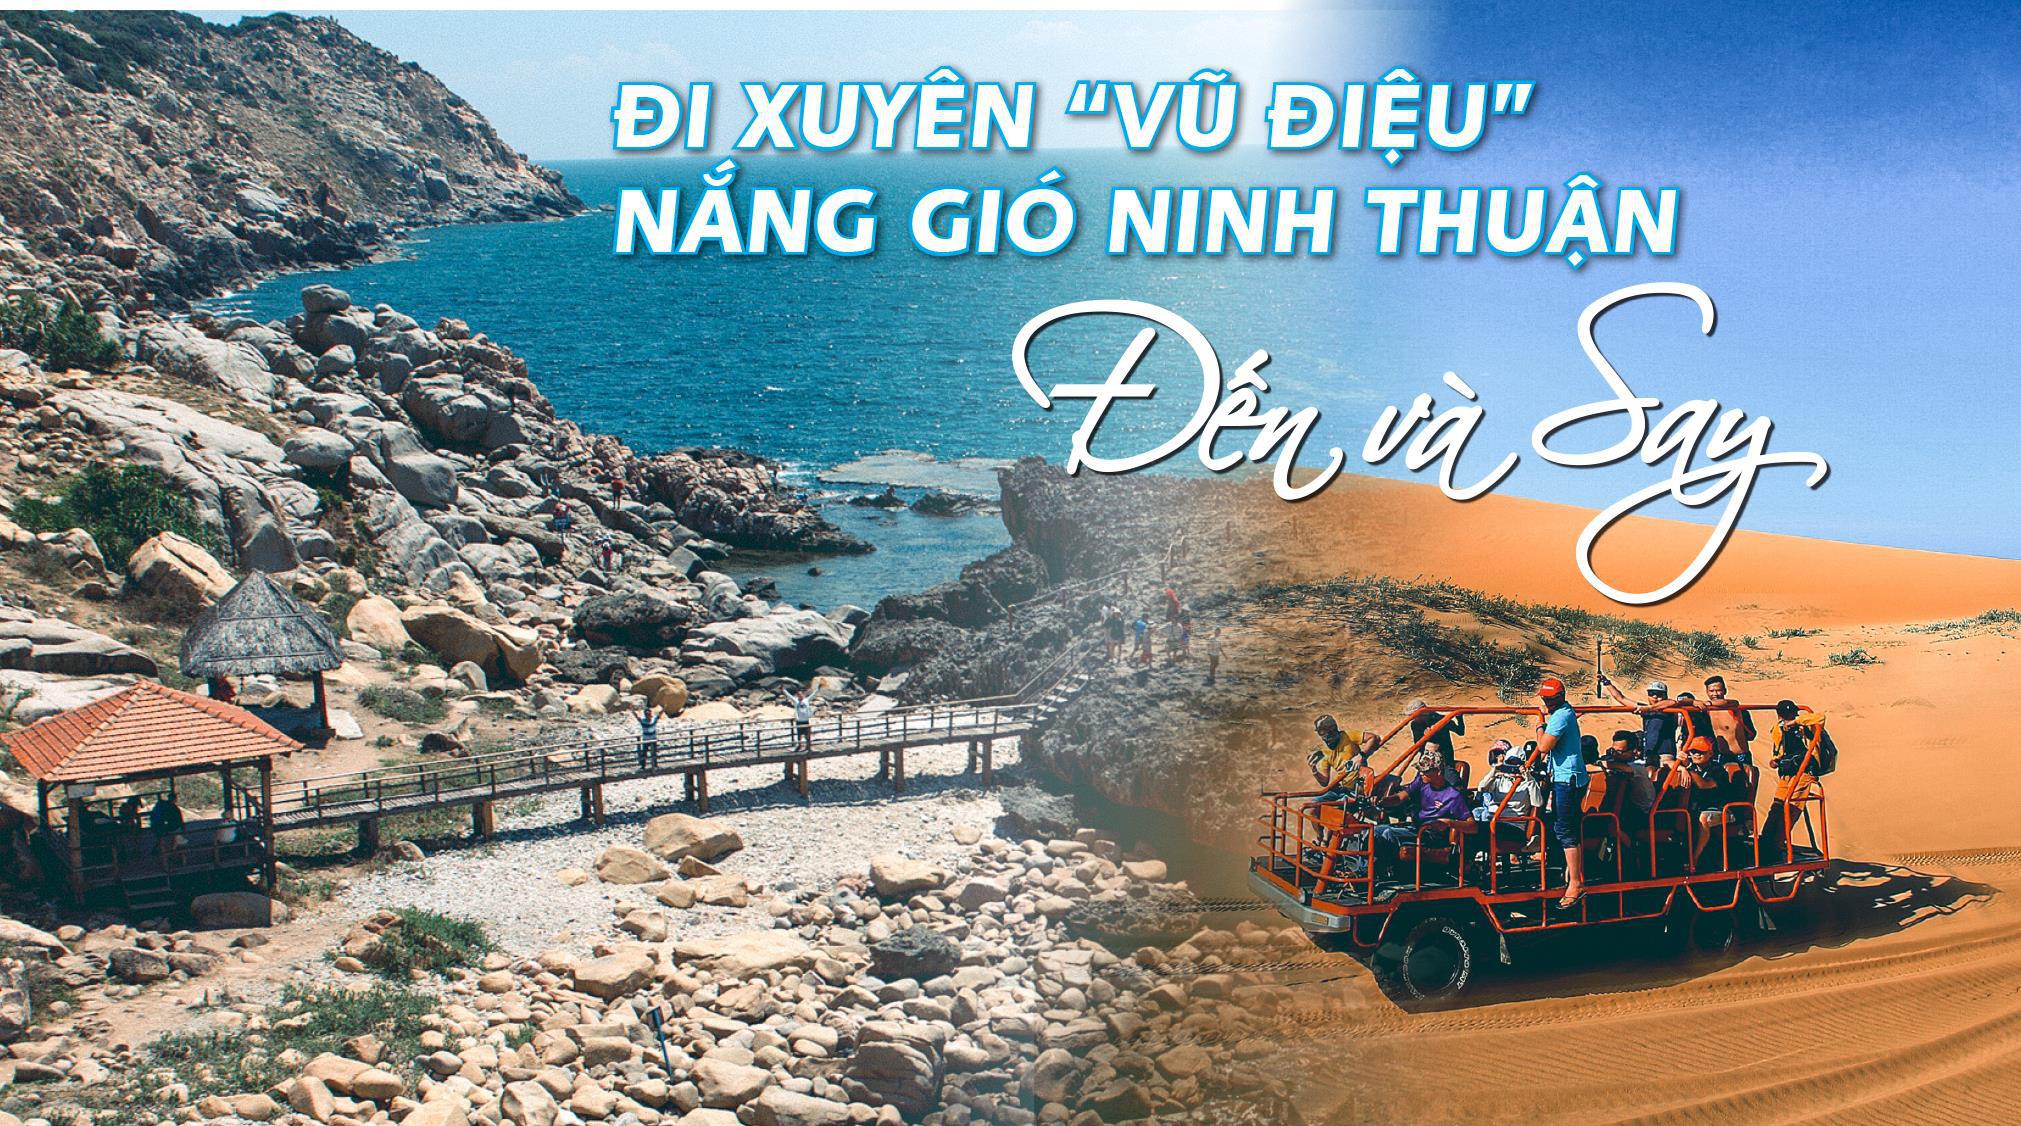 Hà Nội - Nha Trang - Mũi Né - Ninh Thuận 4 Ngày 3 Đêm